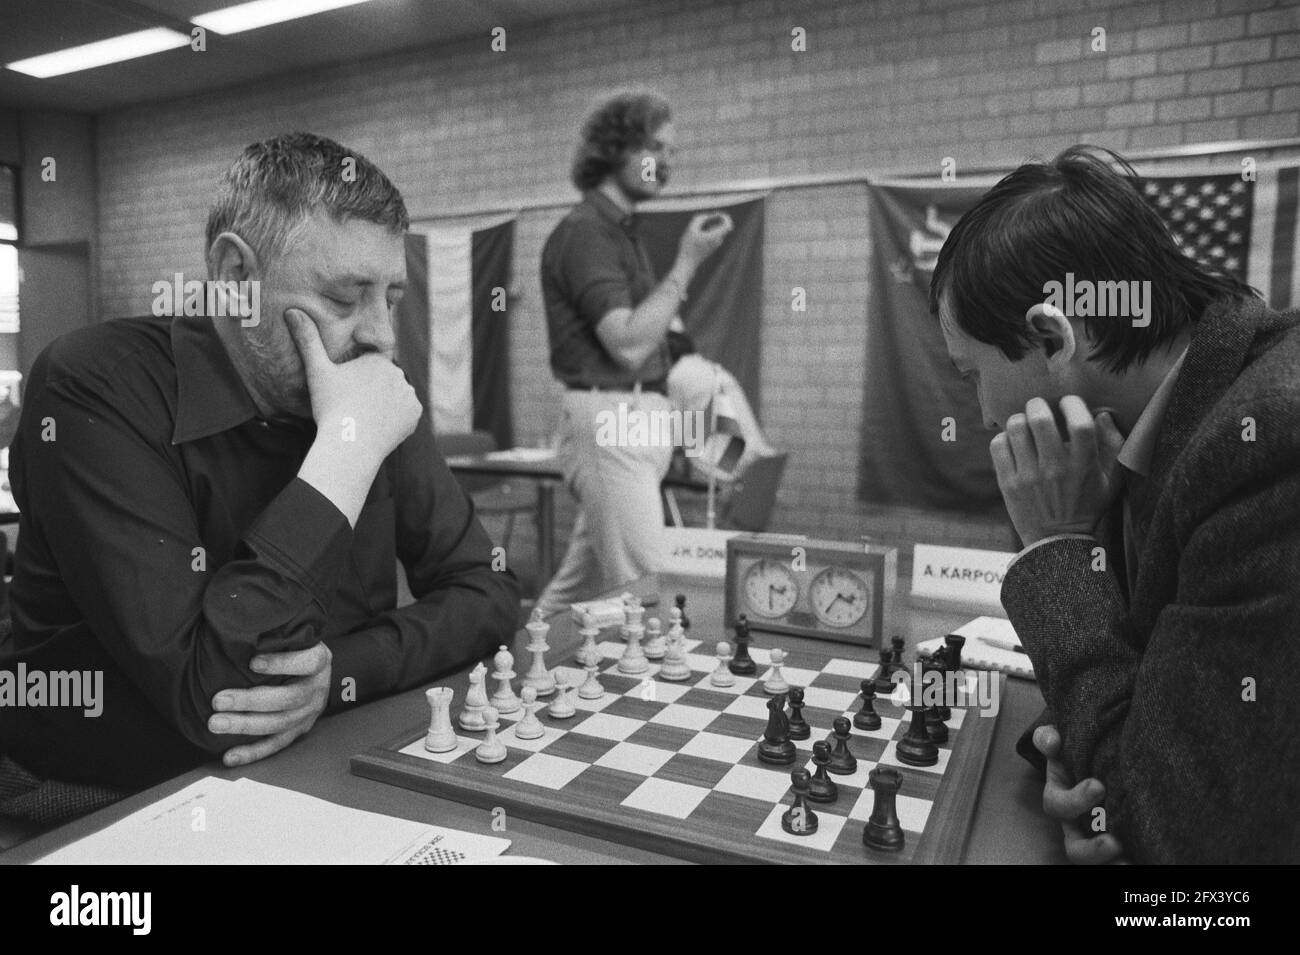 Karpov - Korchnoi World Championship Match (1981) chess event